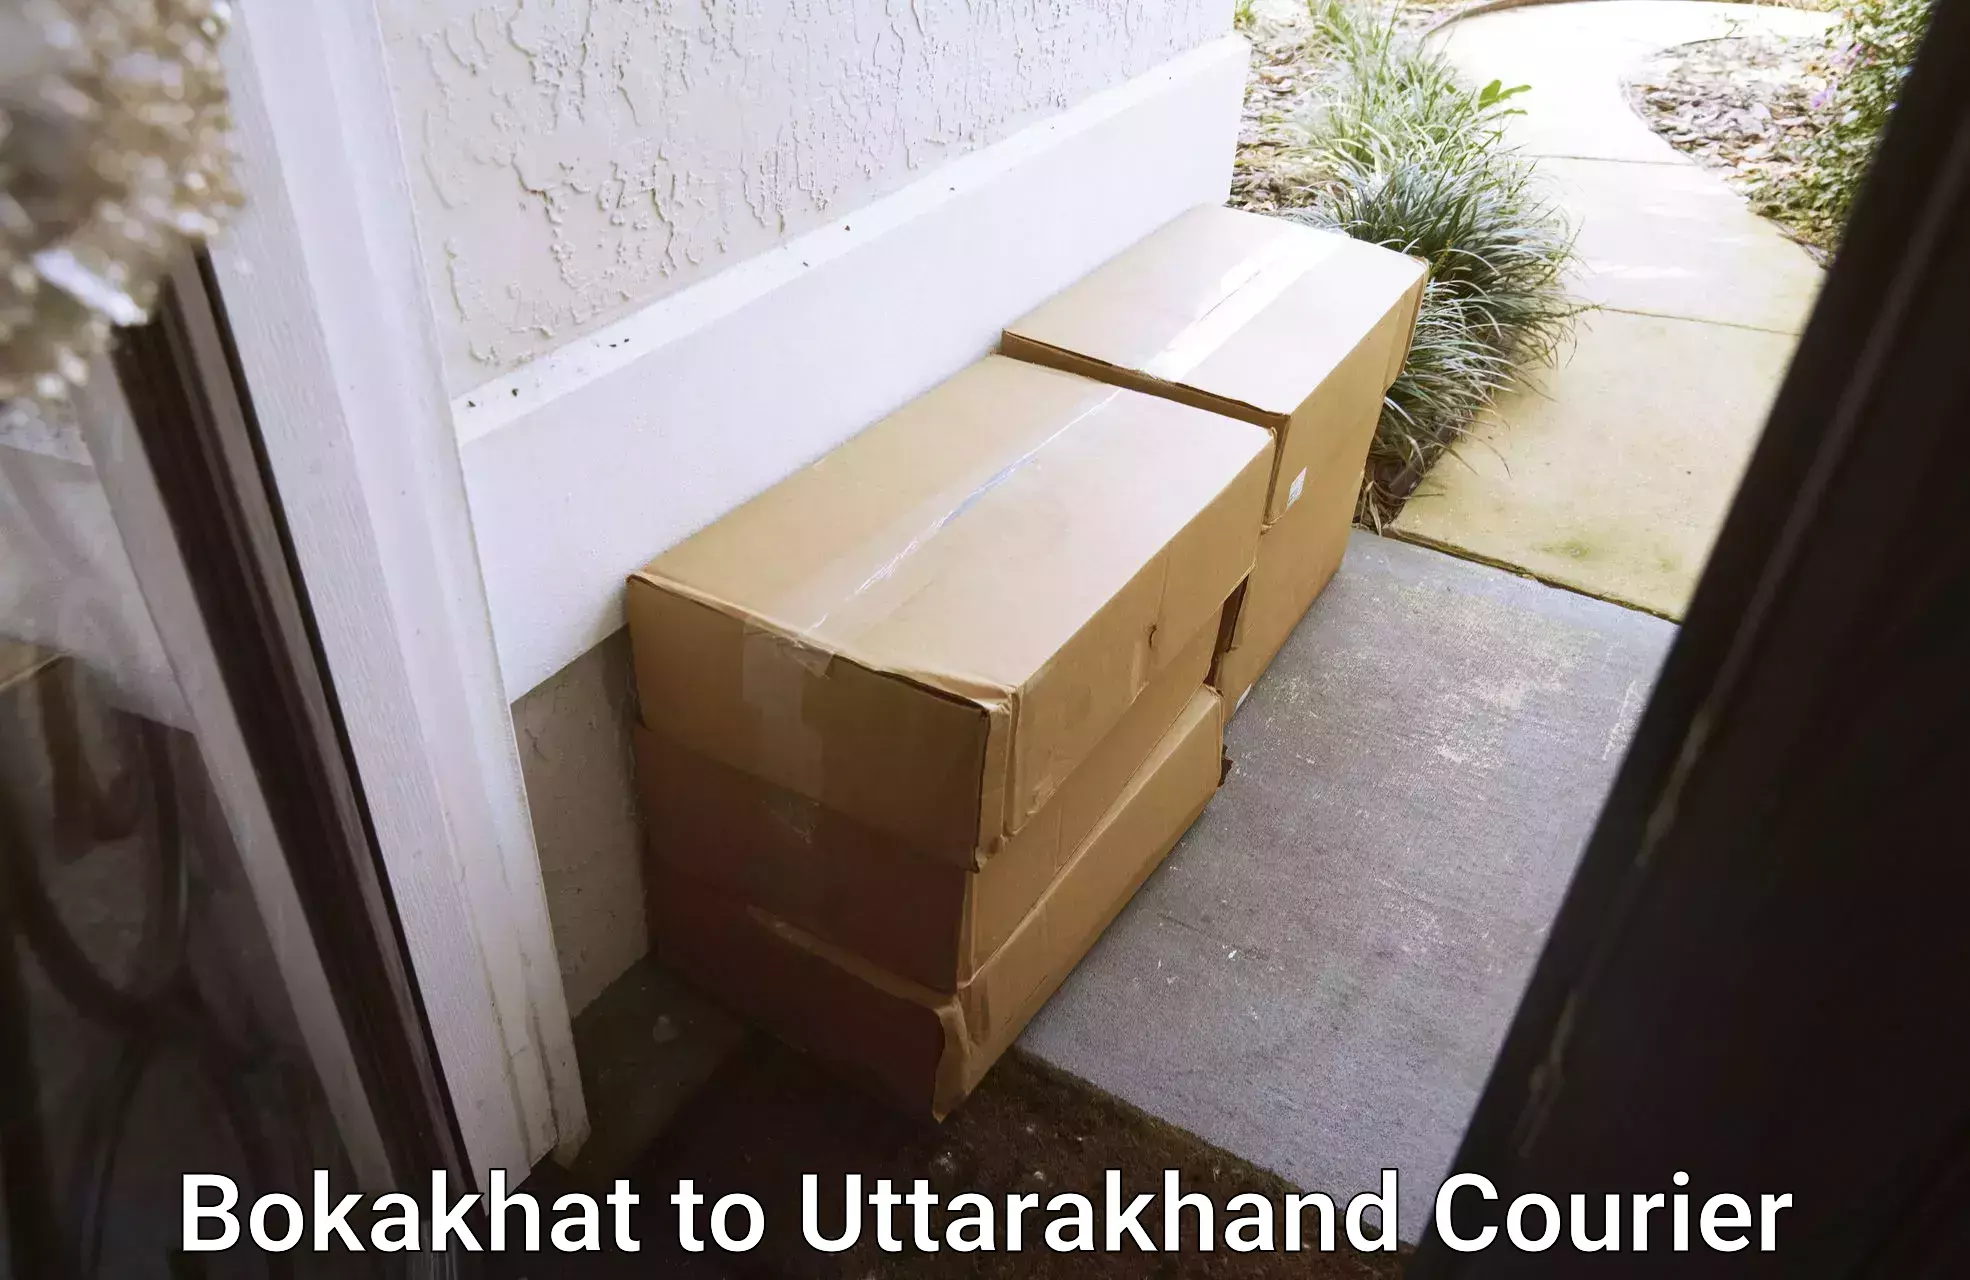 E-commerce fulfillment Bokakhat to Uttarakhand